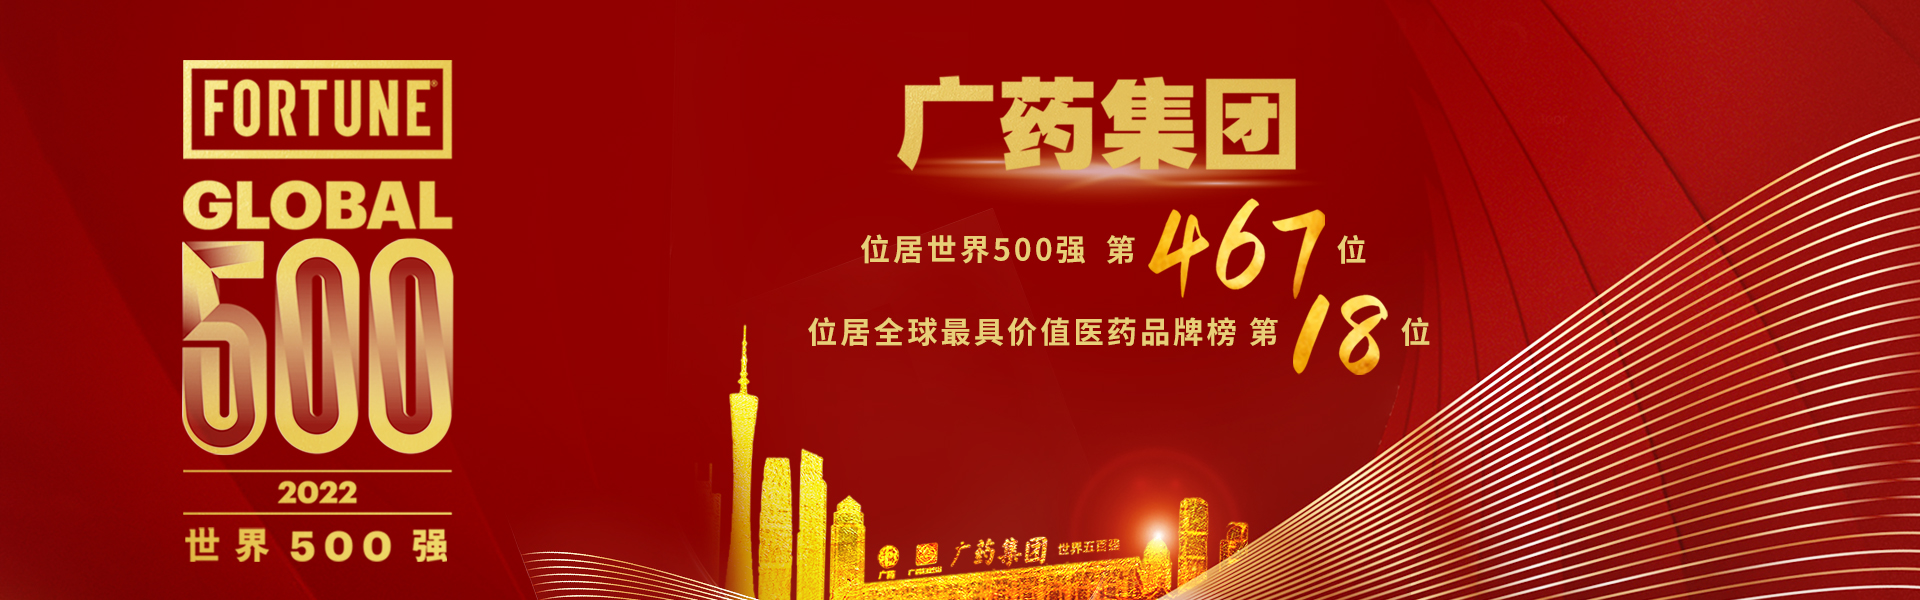 关于当前产品2007太阳娱乐集团·(中国)官方网站的成功案例等相关图片